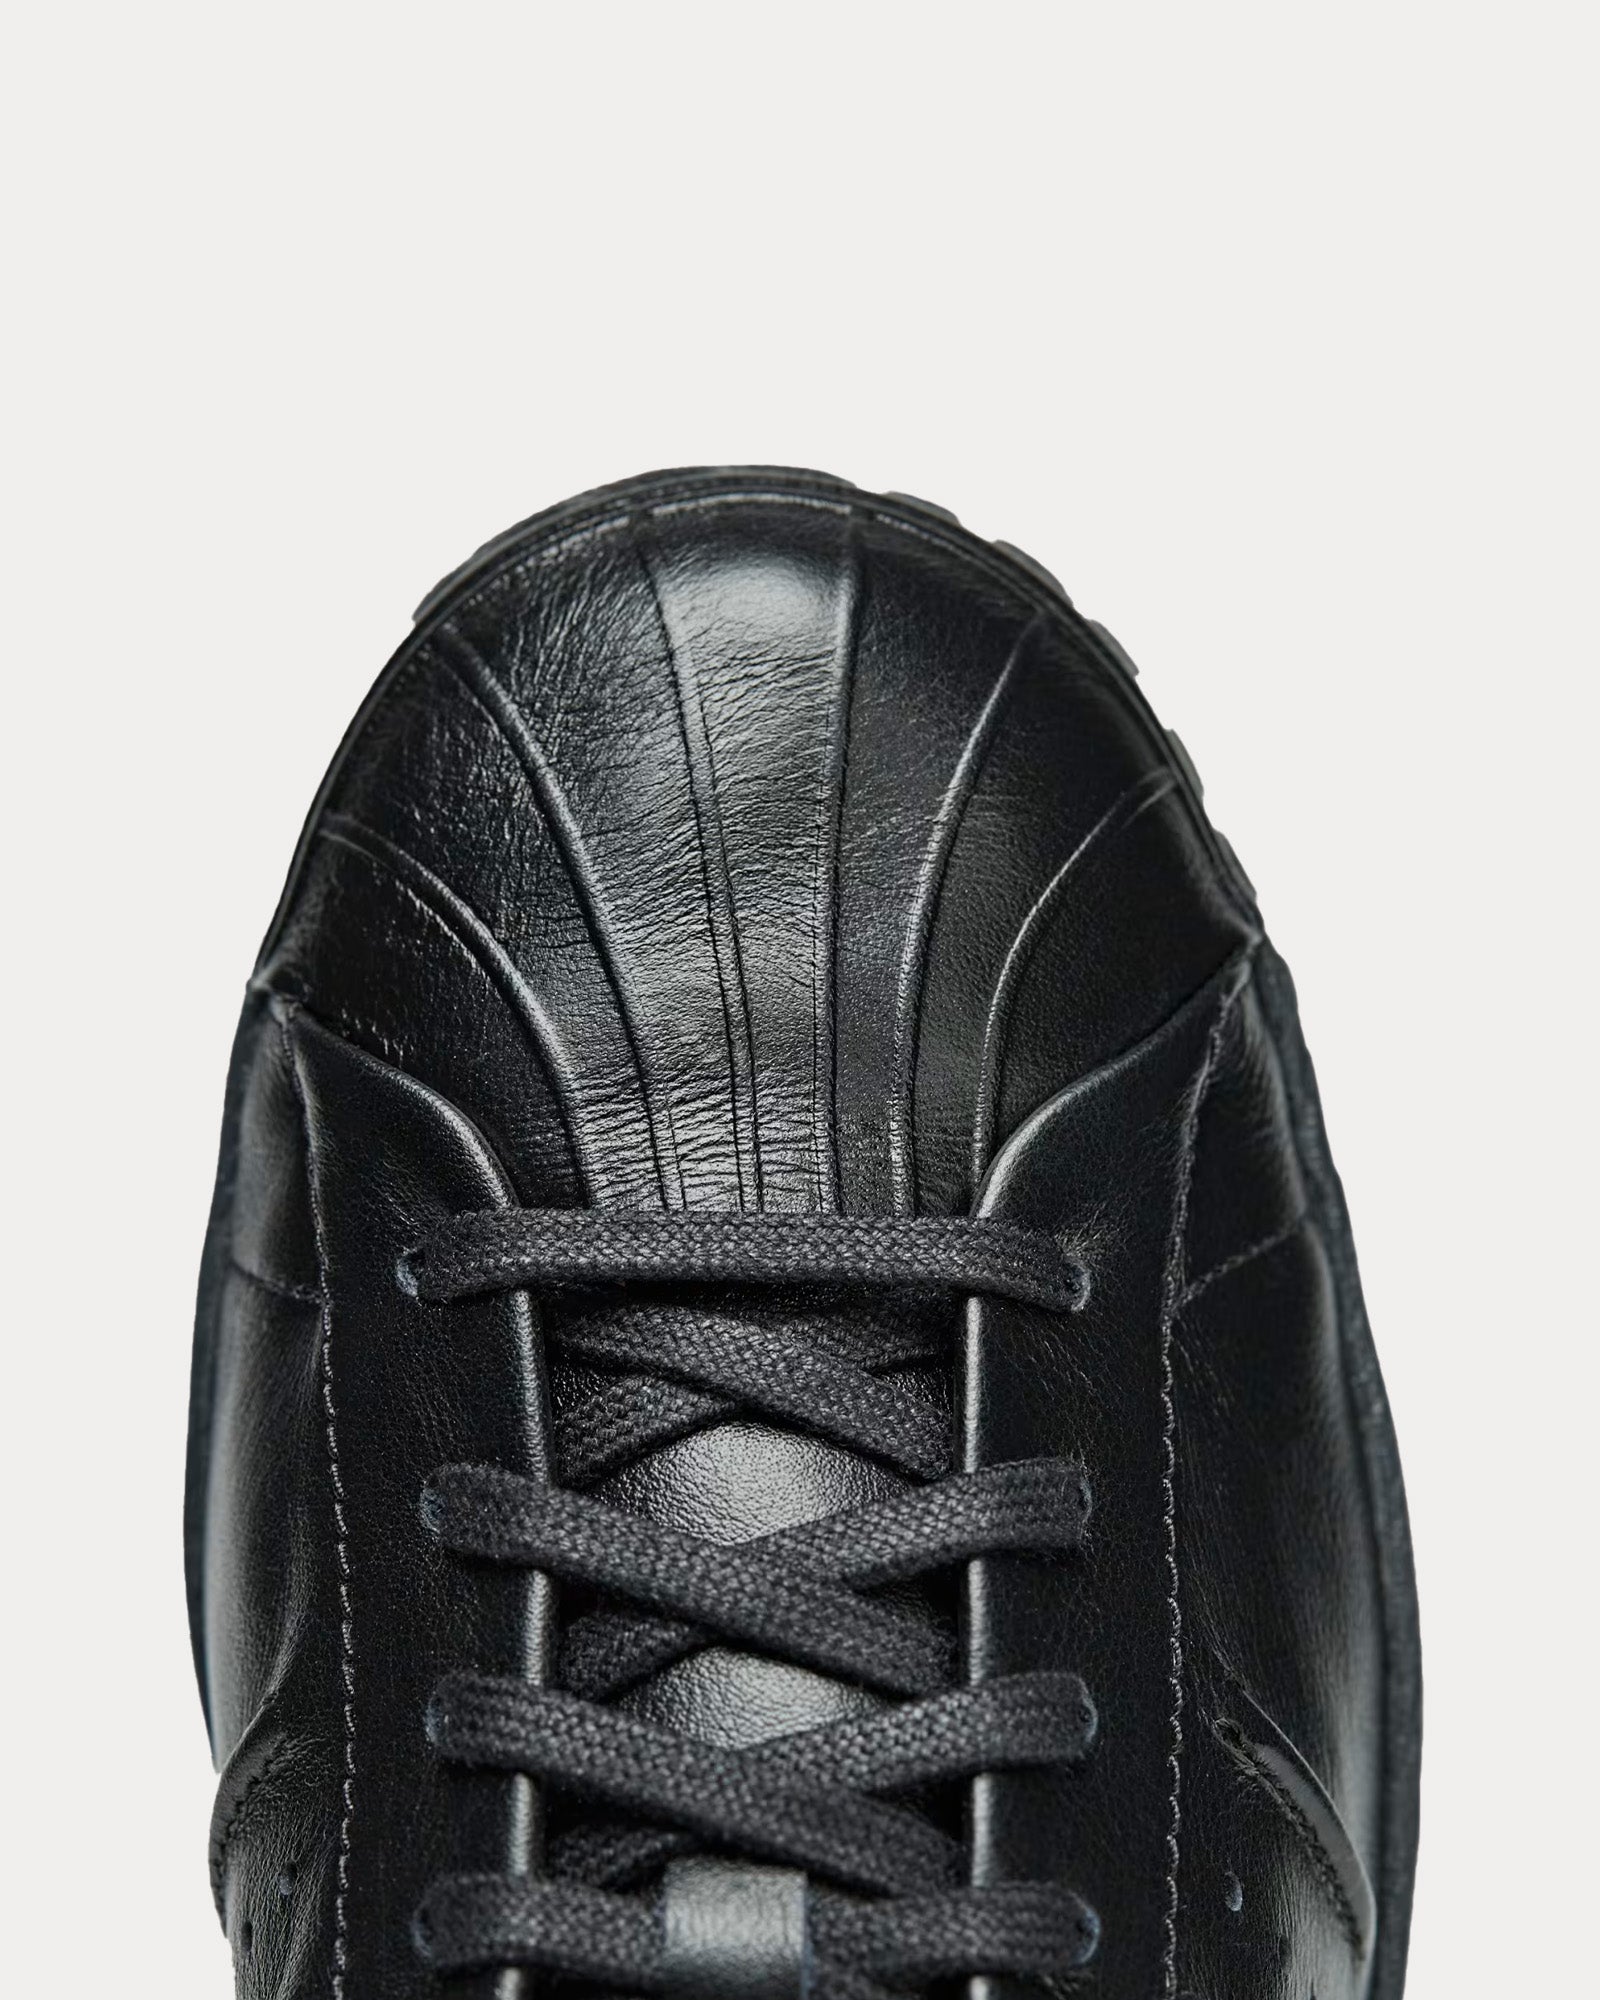 Y-3 - Superstar Leather Black / Black / Black Low Top Sneakers